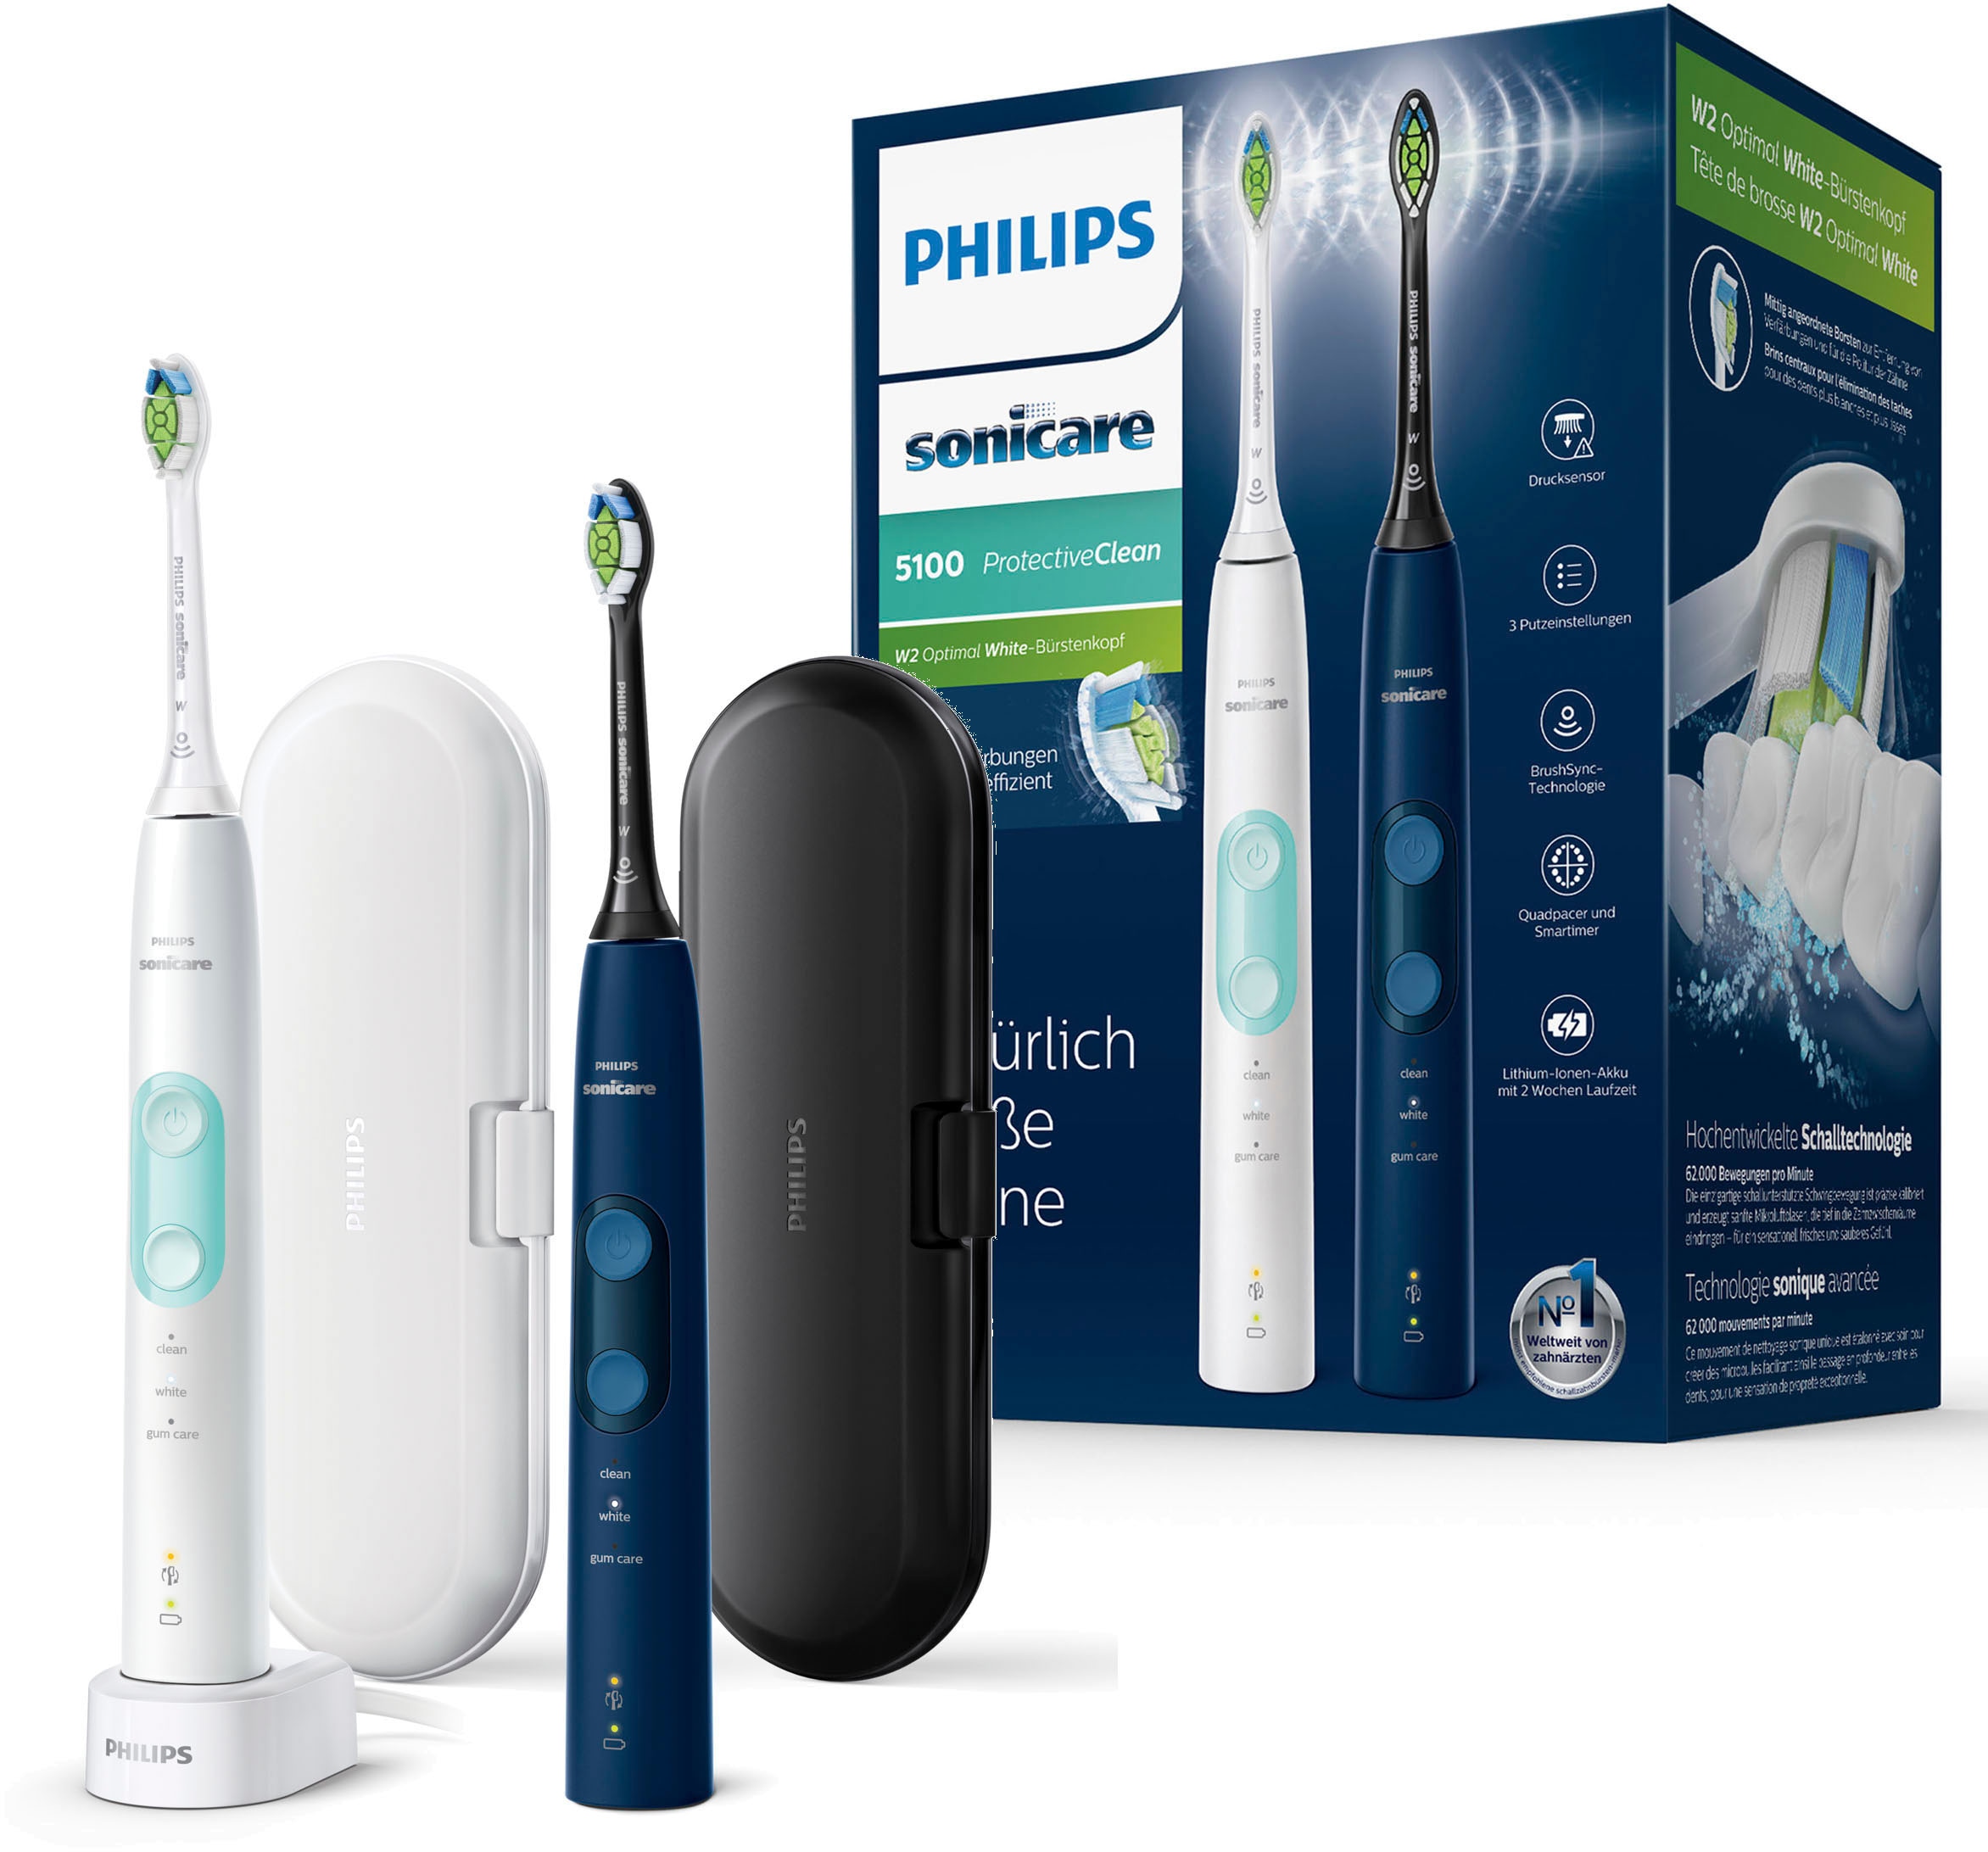 Philips Sonicare Elektrische Zahnbürste »ProtectiveClean 5100 HX6851/34«, 2 St. Aufsteckbürsten, mit Schalltechnologie, 3 Putzprogramme, Reiseetui